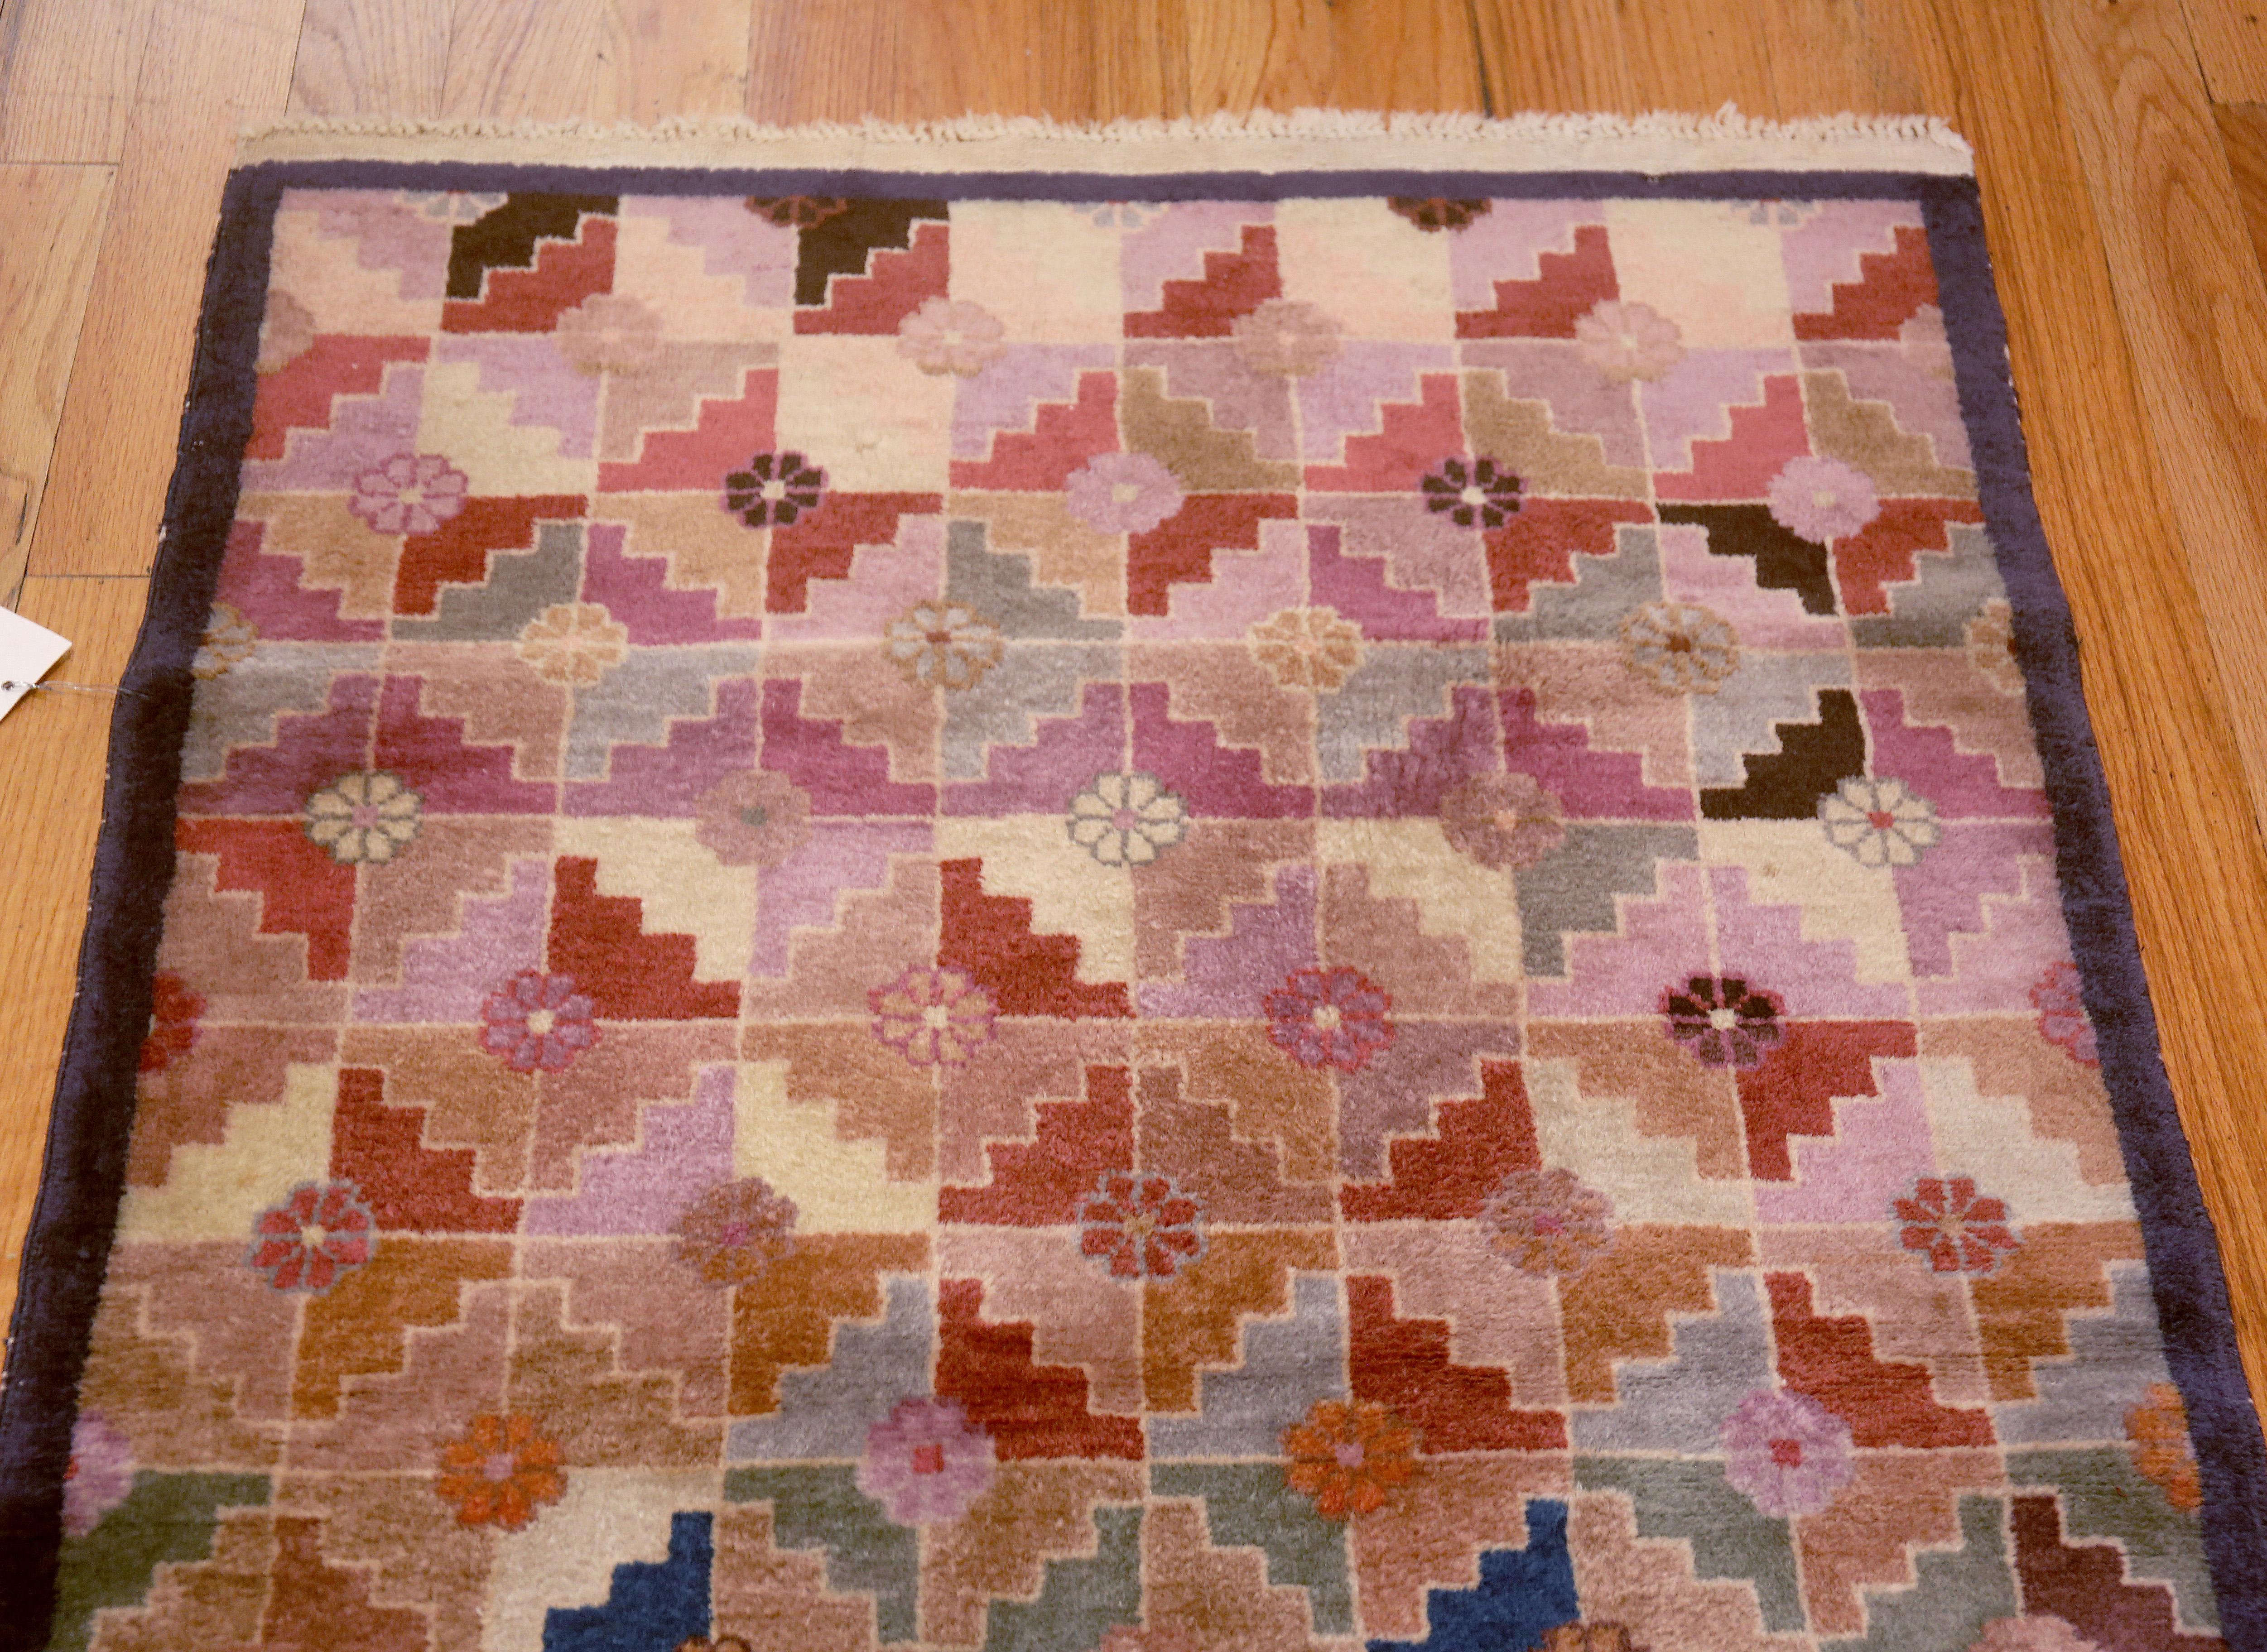 Tapis géométrique ancien chinois Art Deco, Pays d'origine / type de tapis : Chine, Circa date : 1920. Taille : 3 ft x 6 ft (0,91 m x 1,83 m)
 